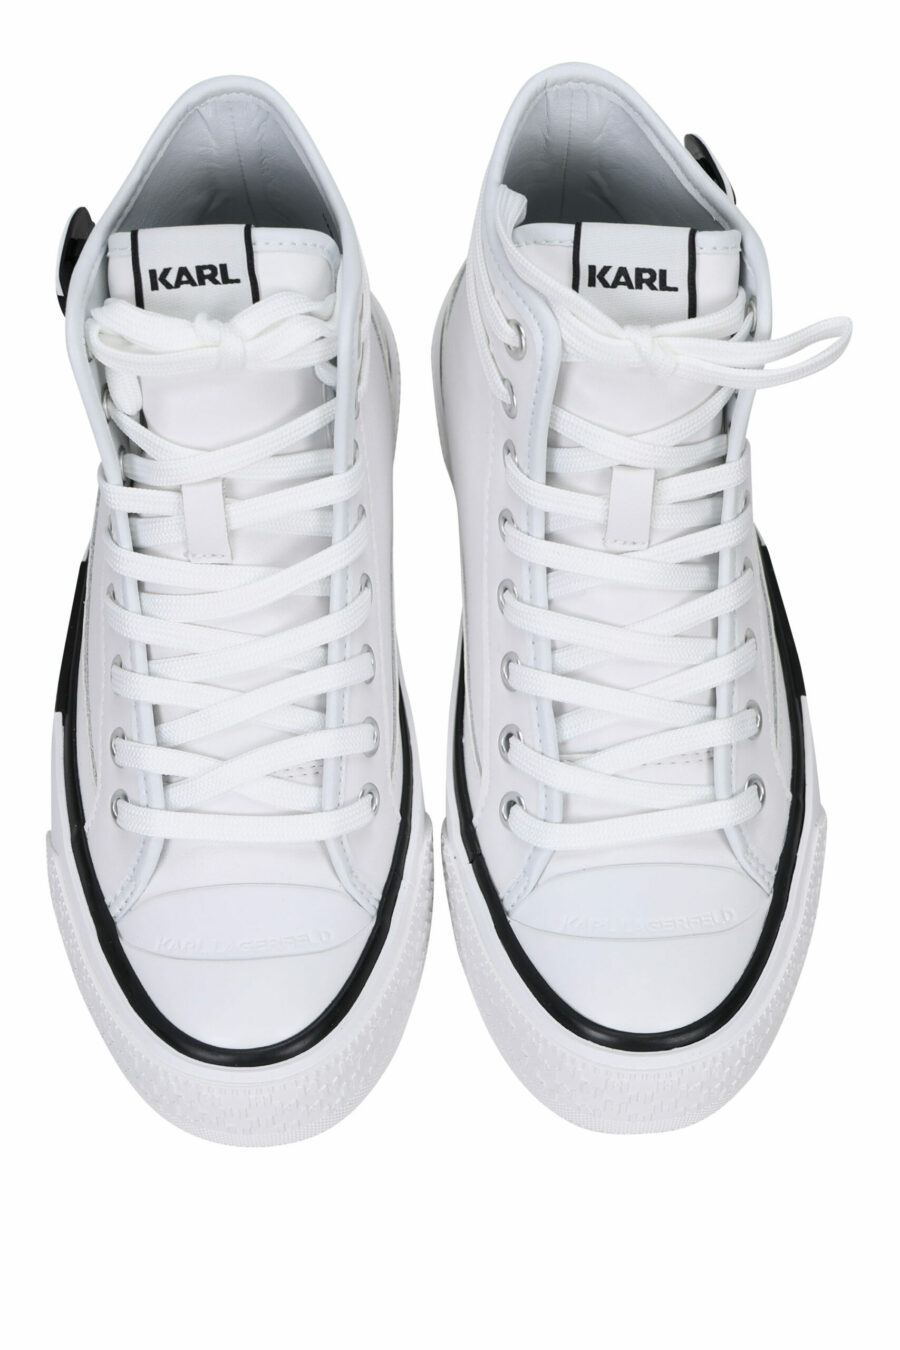 Zapatillas blancas altas de cuero con suela blanca y logo "karl" - 5059529322974 4 scaled